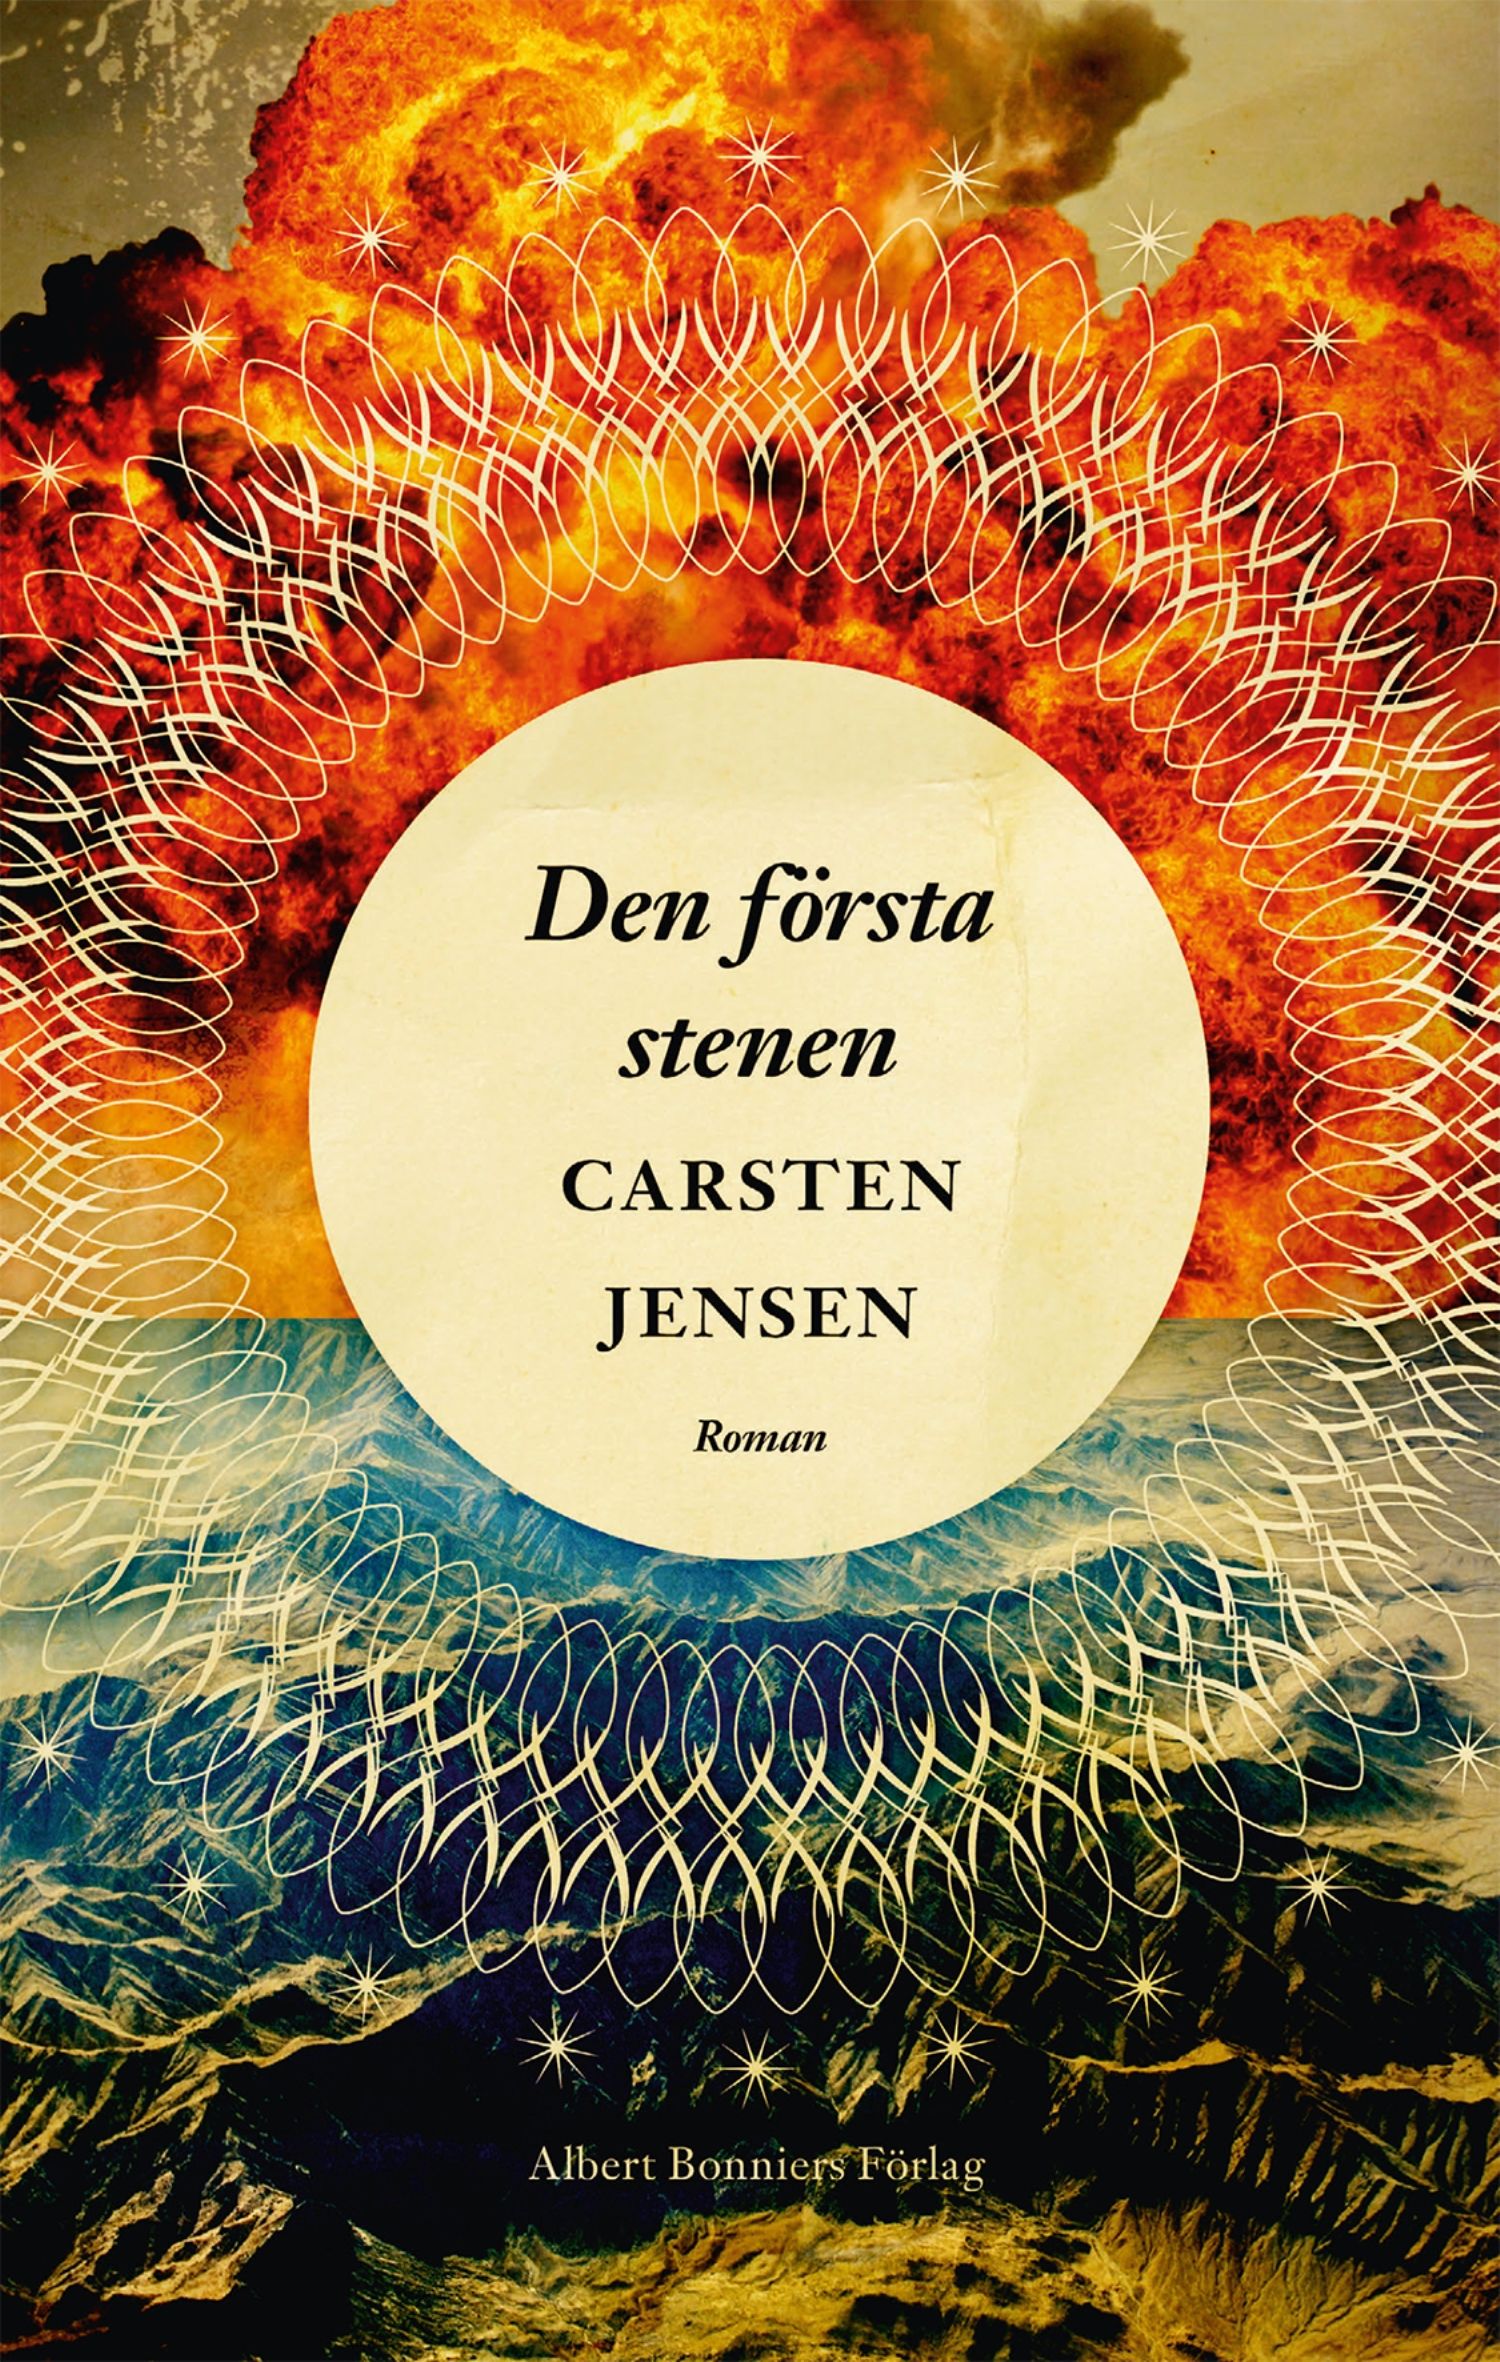 Den första stenen, eBook by Carsten Jensen